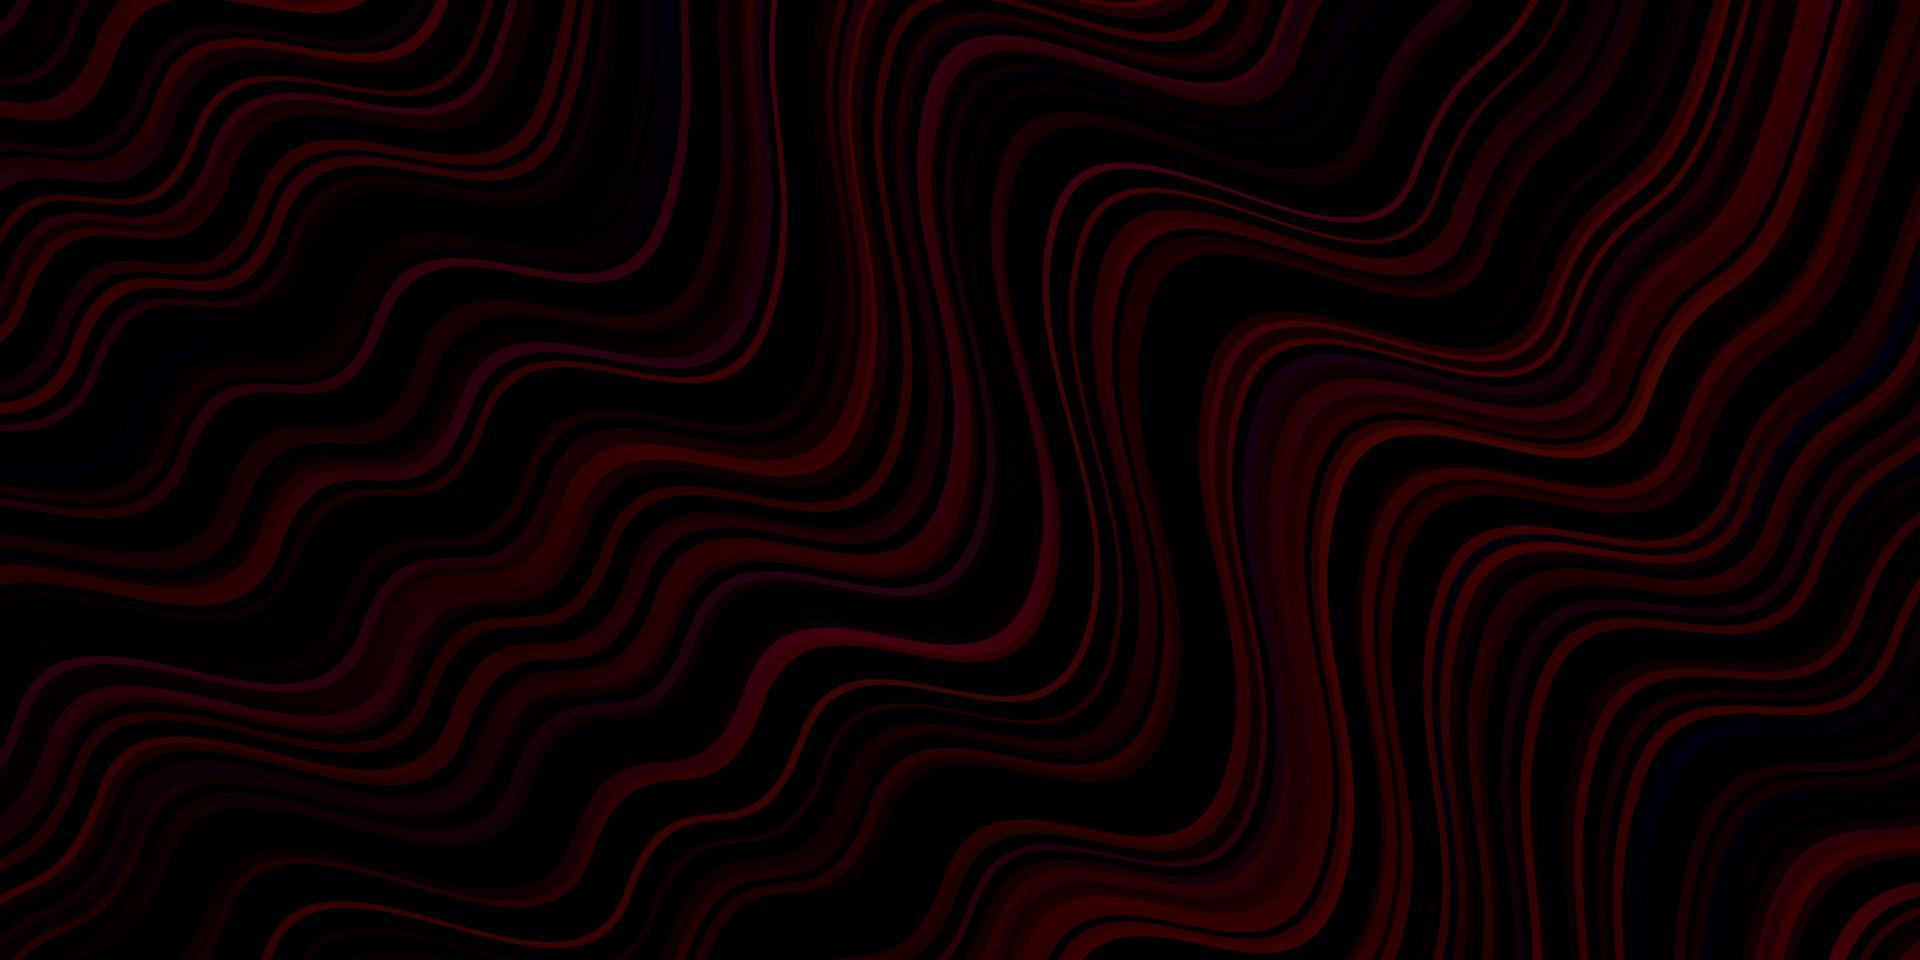 fundo vector roxo escuro com linhas dobradas.